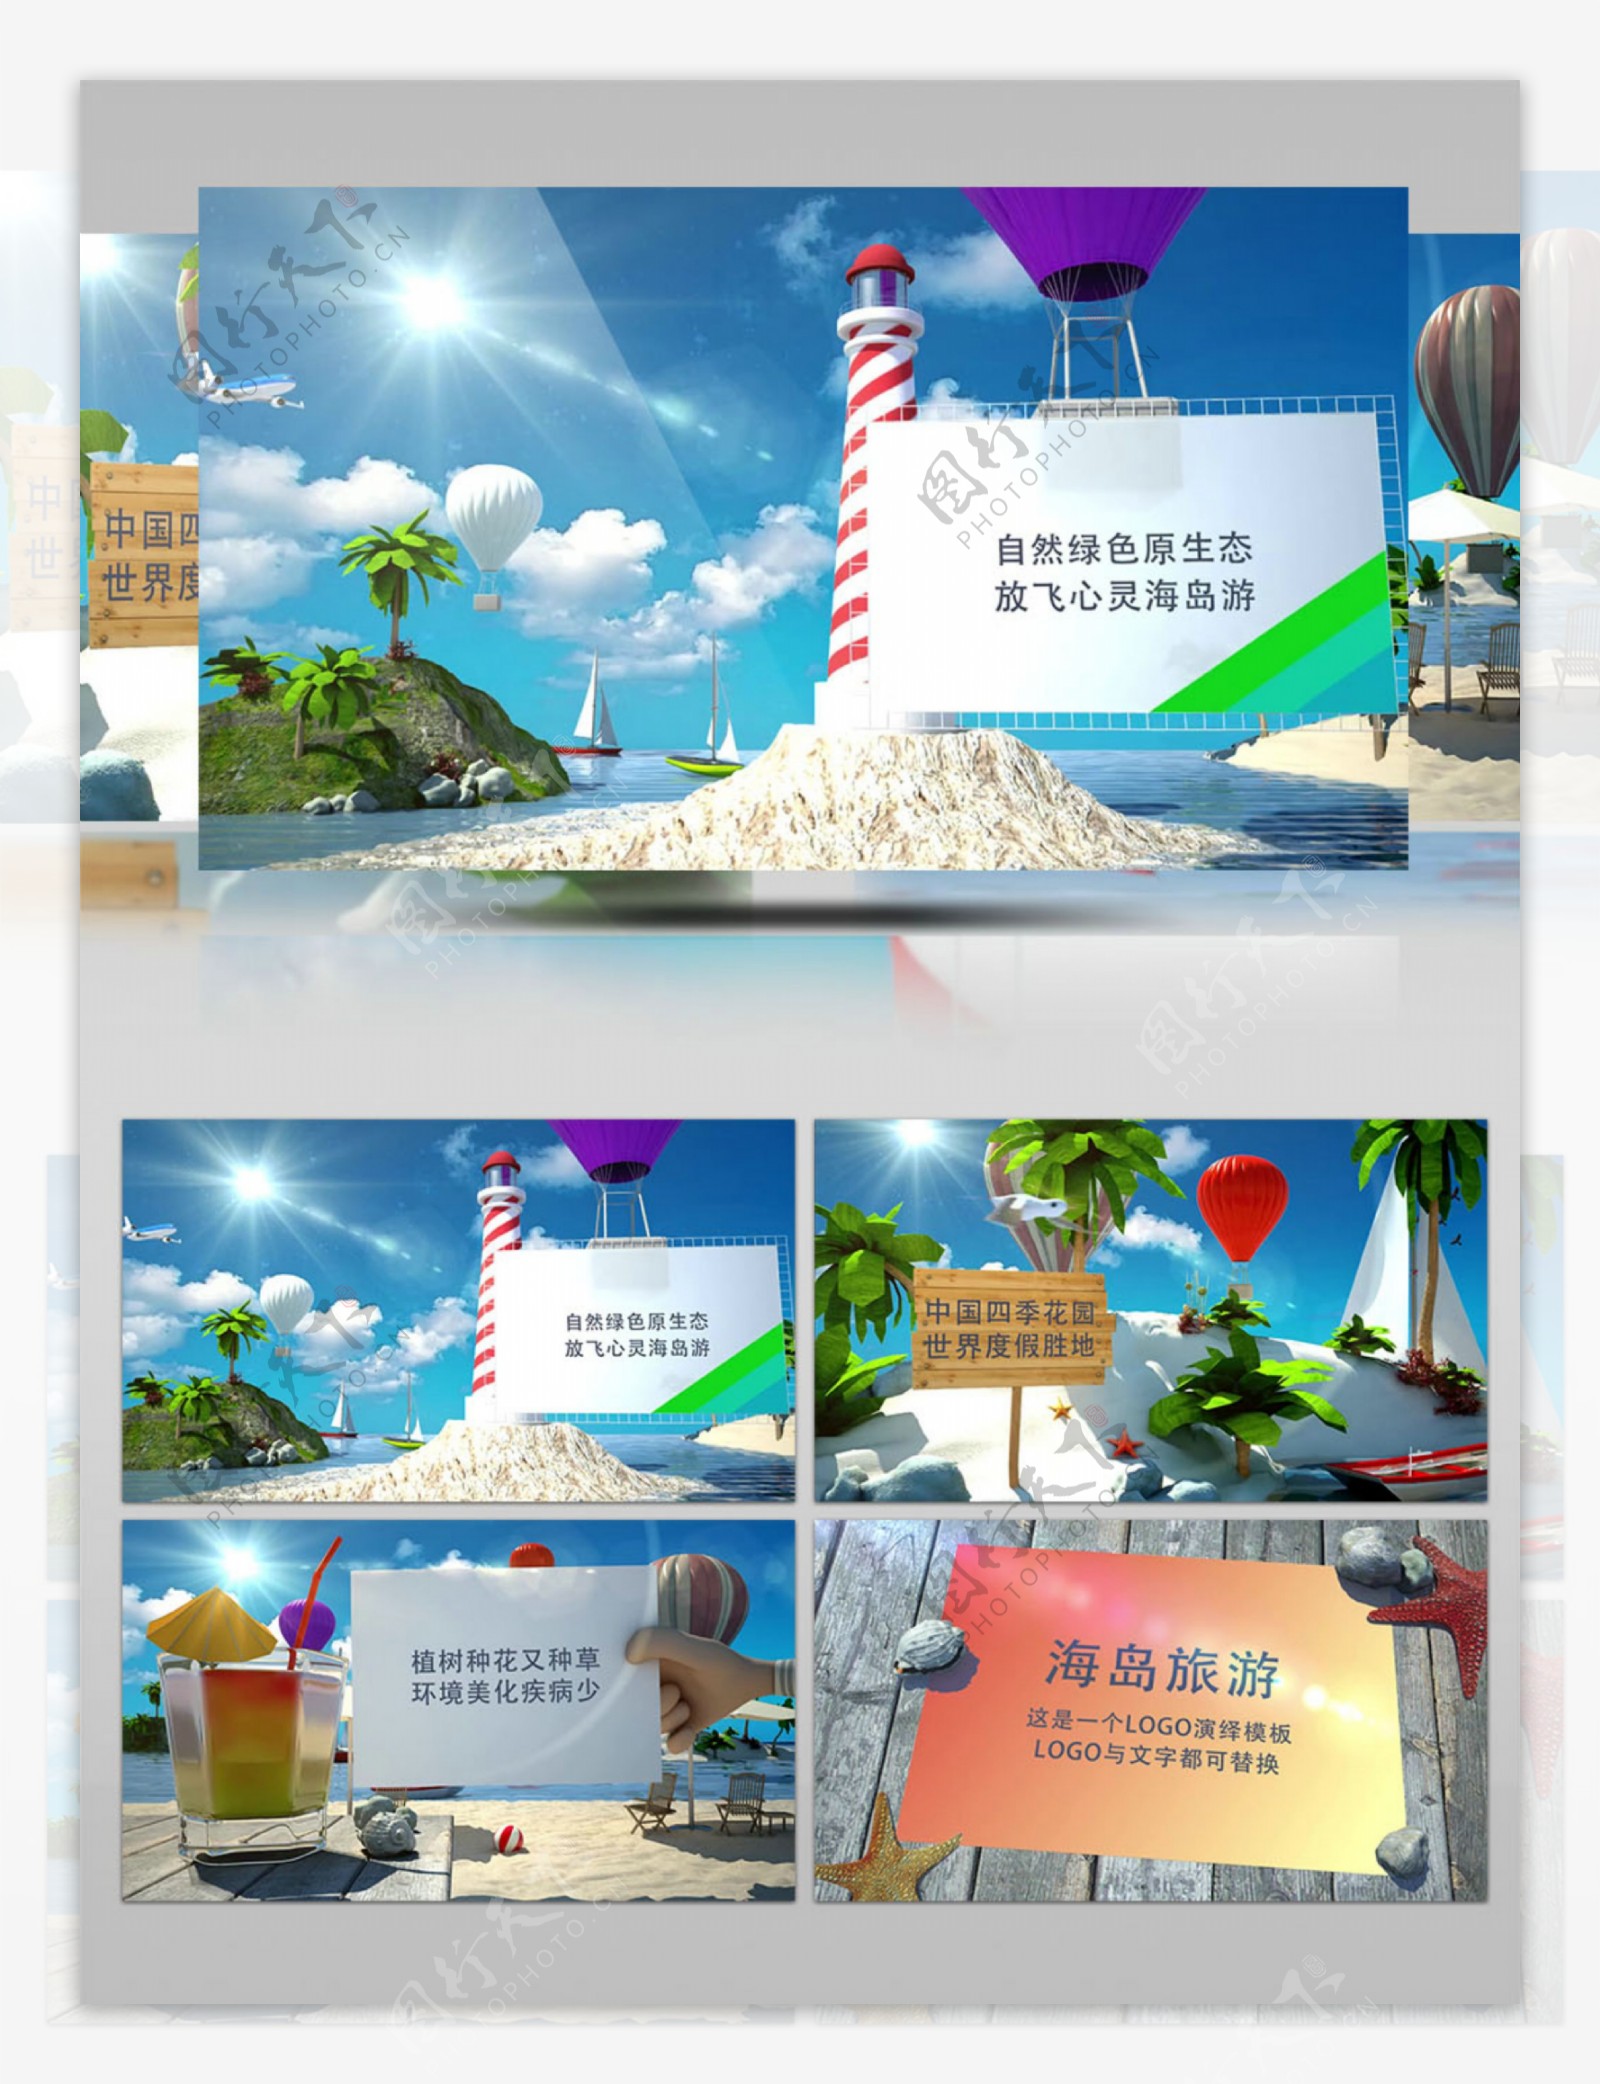 浪漫海岛蓝天白云旅游宣传AE模板